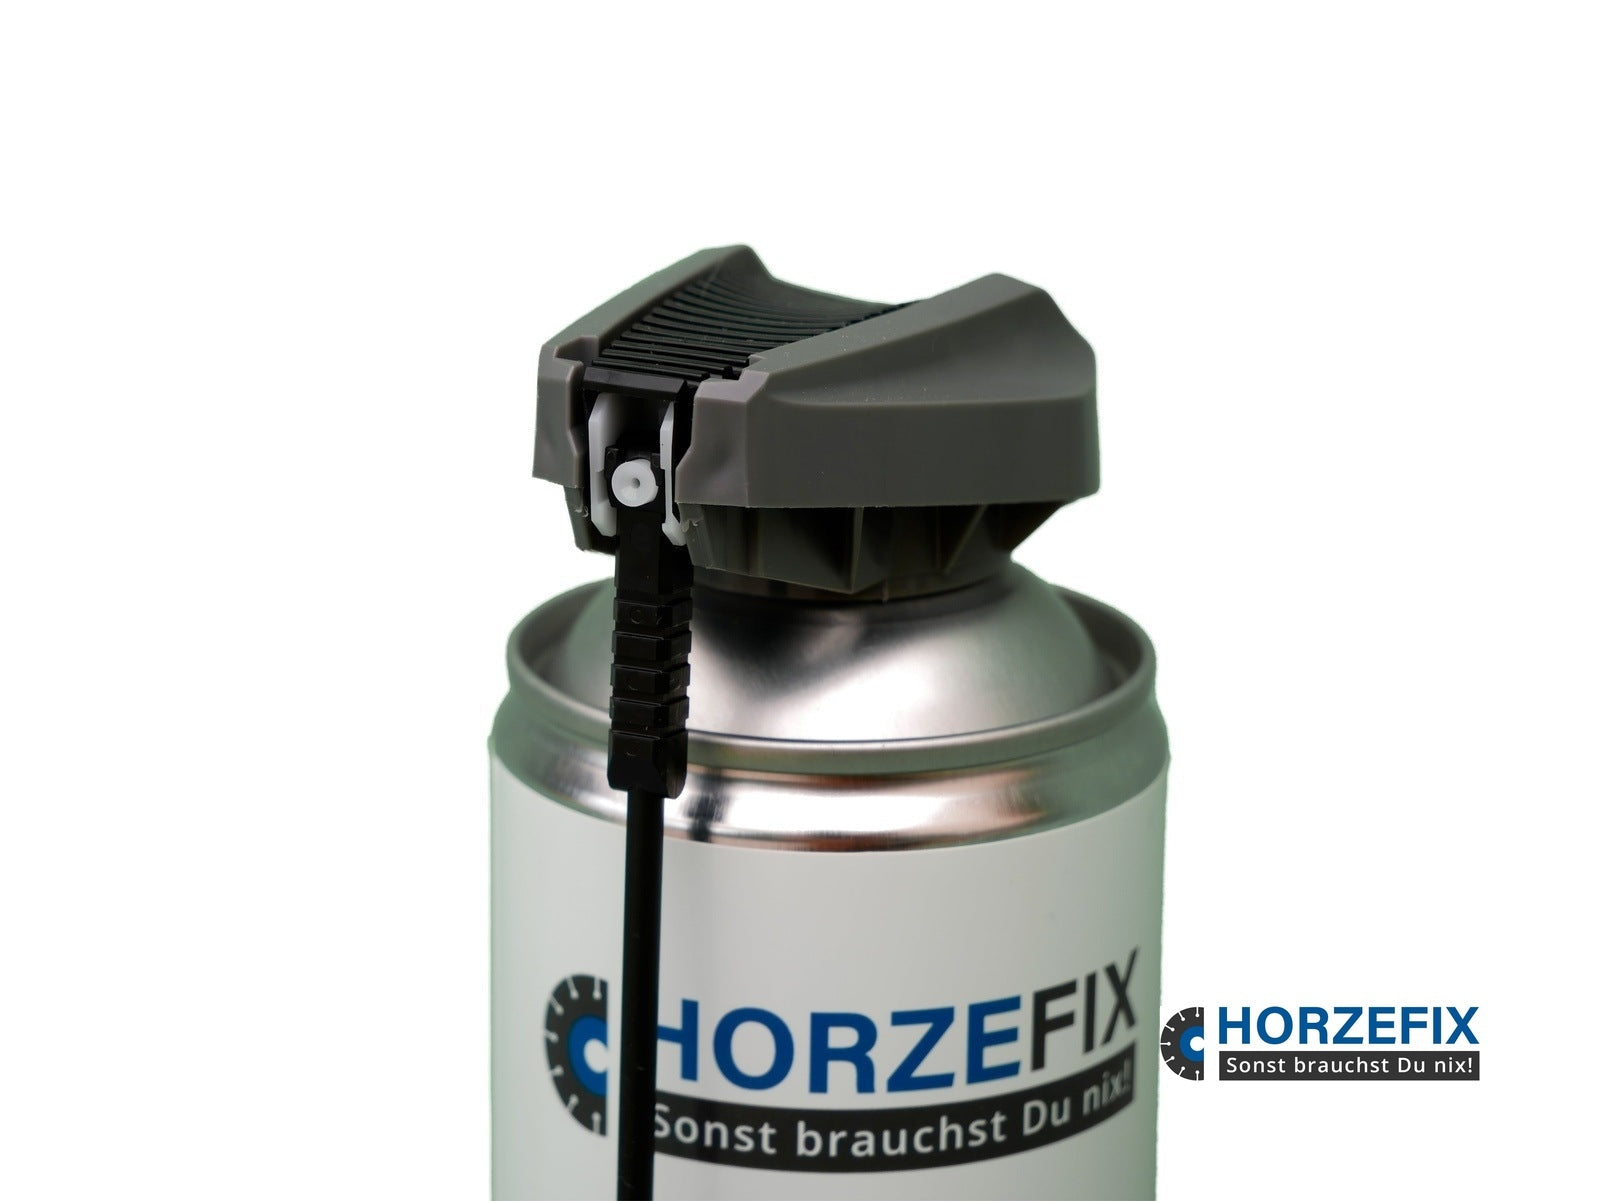 HORZEFIX Multifunktionsspray -Multiflutsch- Rostlöser -Kriechöl-Reiniger von Metall, Kettenreiniger für das Motorrad und Fahrrad ideales Sprühöl horzefix